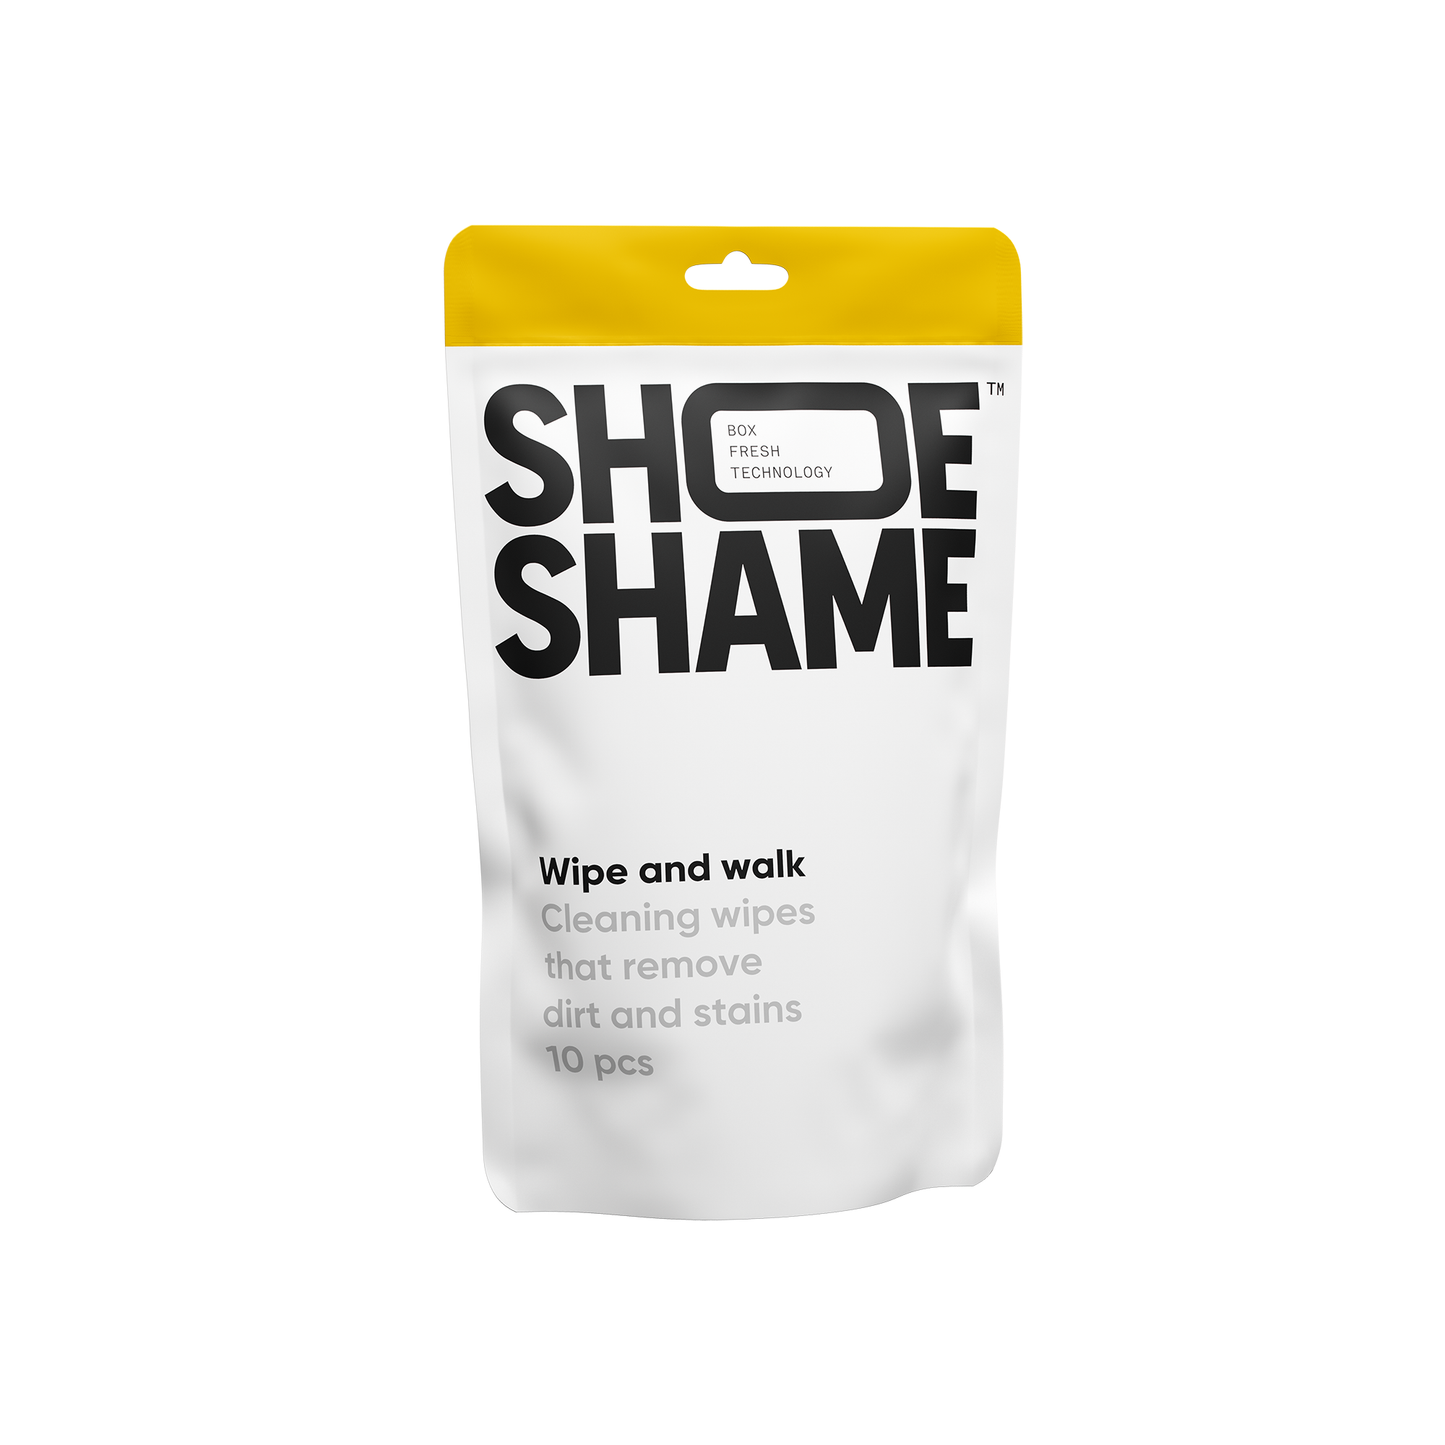 Shoe Shame - Wipe and walk